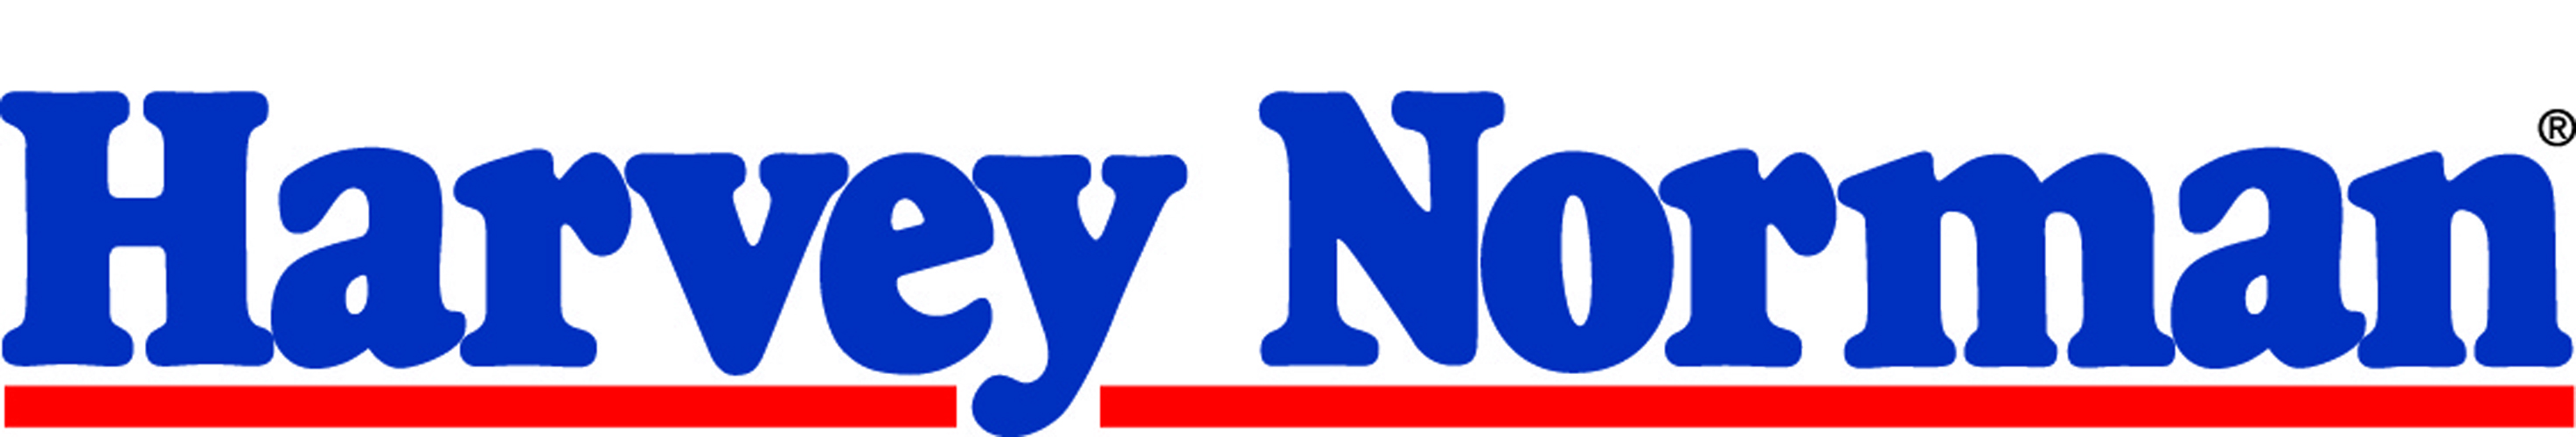 Harvey Norman Logo photo - 1